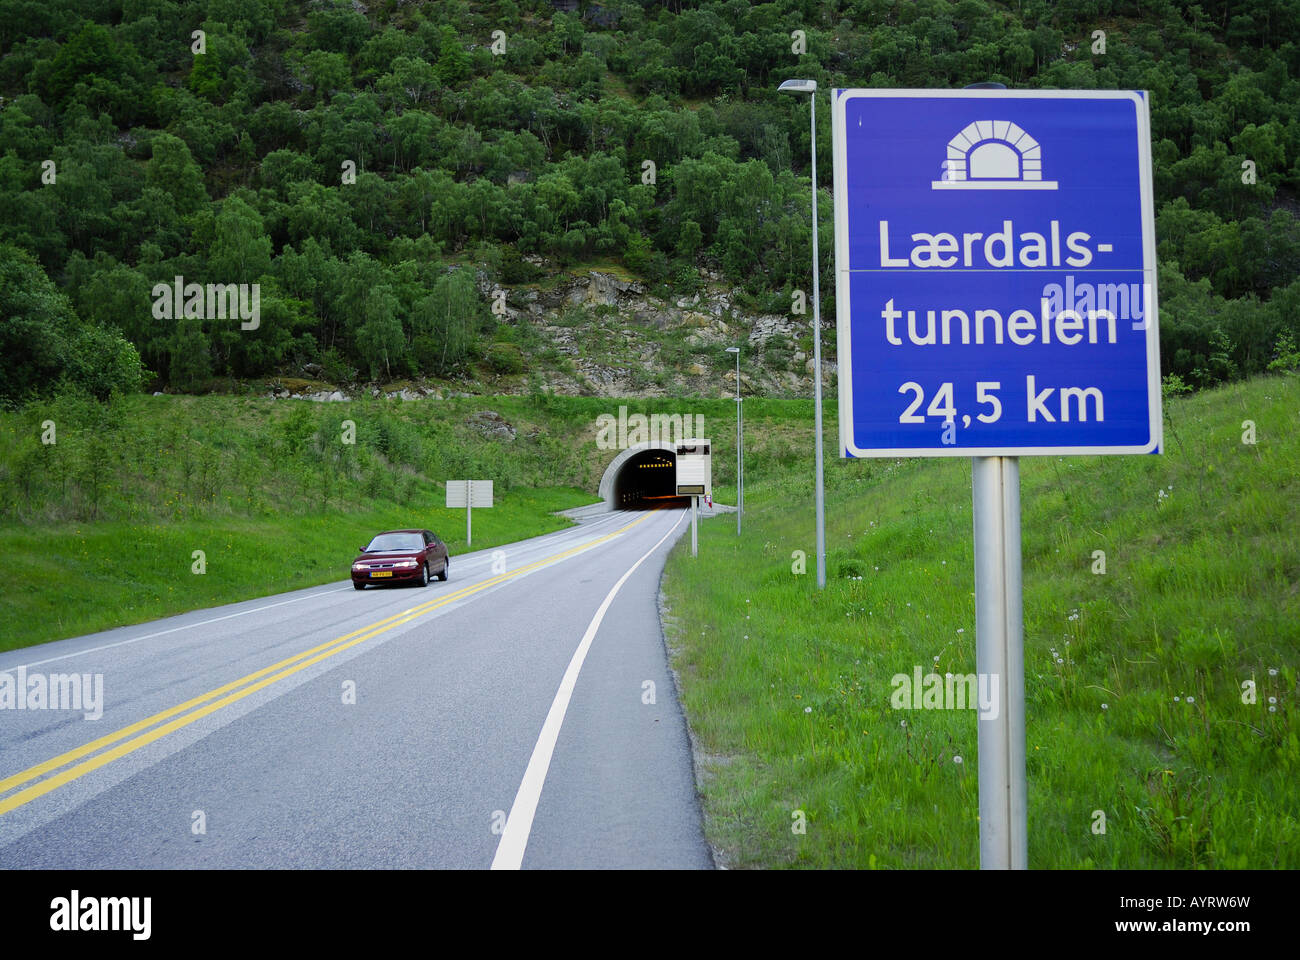 Lærdalstunnelen (Laerdal Tunnel), at 24.5 km the world's longest tunnel, Laerdal, Sogn og Fjordane, Norway, Scandinavia Stock Photo